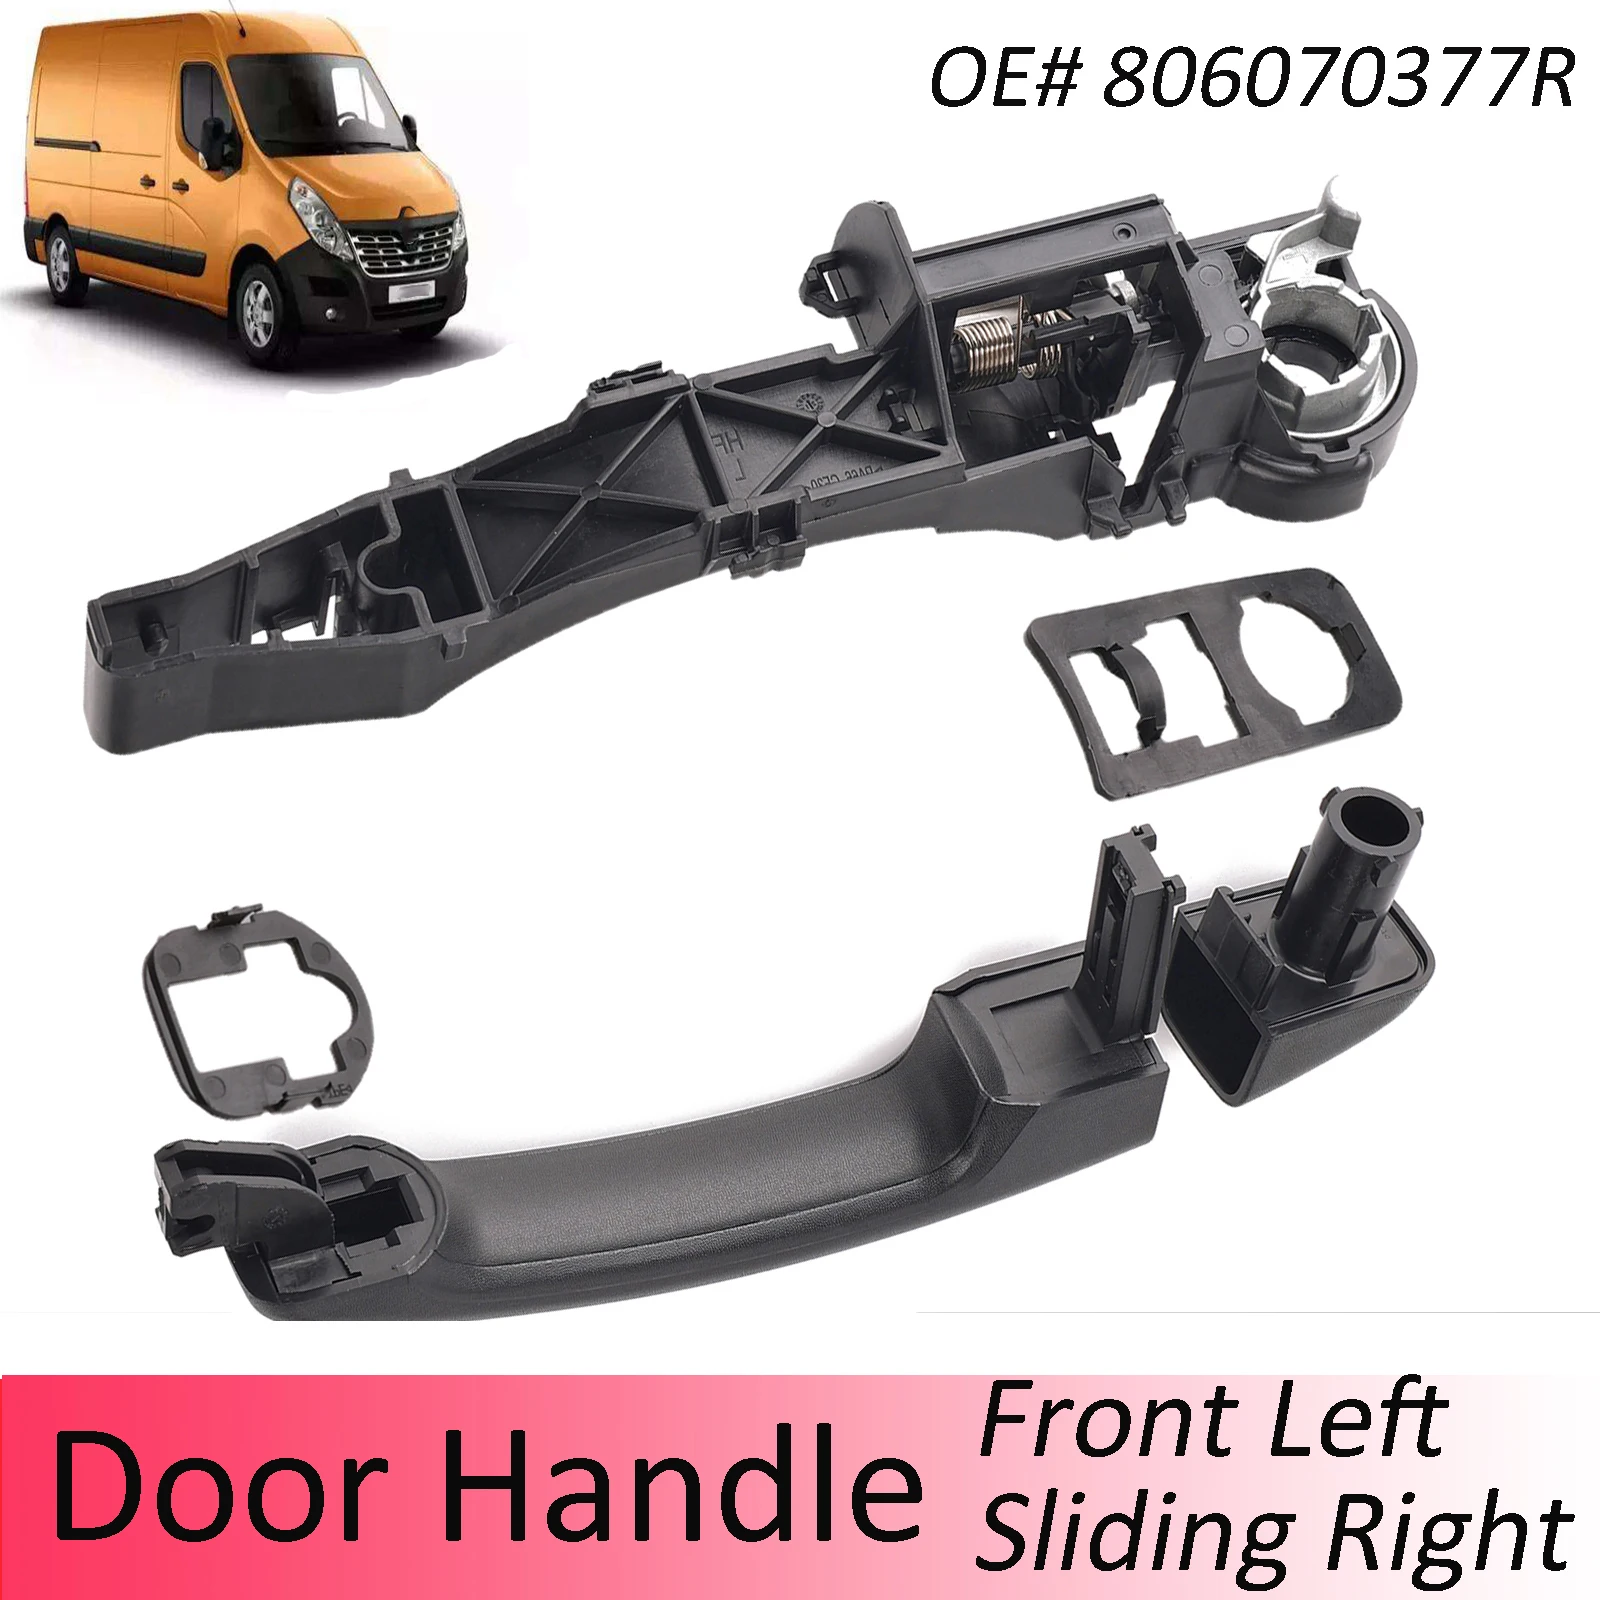 

Door Sliding Handle Right Side Door Exterior Handle Holder / Handle Kit For Nissan NV400 2010 - 2016 806078197R Bracket Carrier